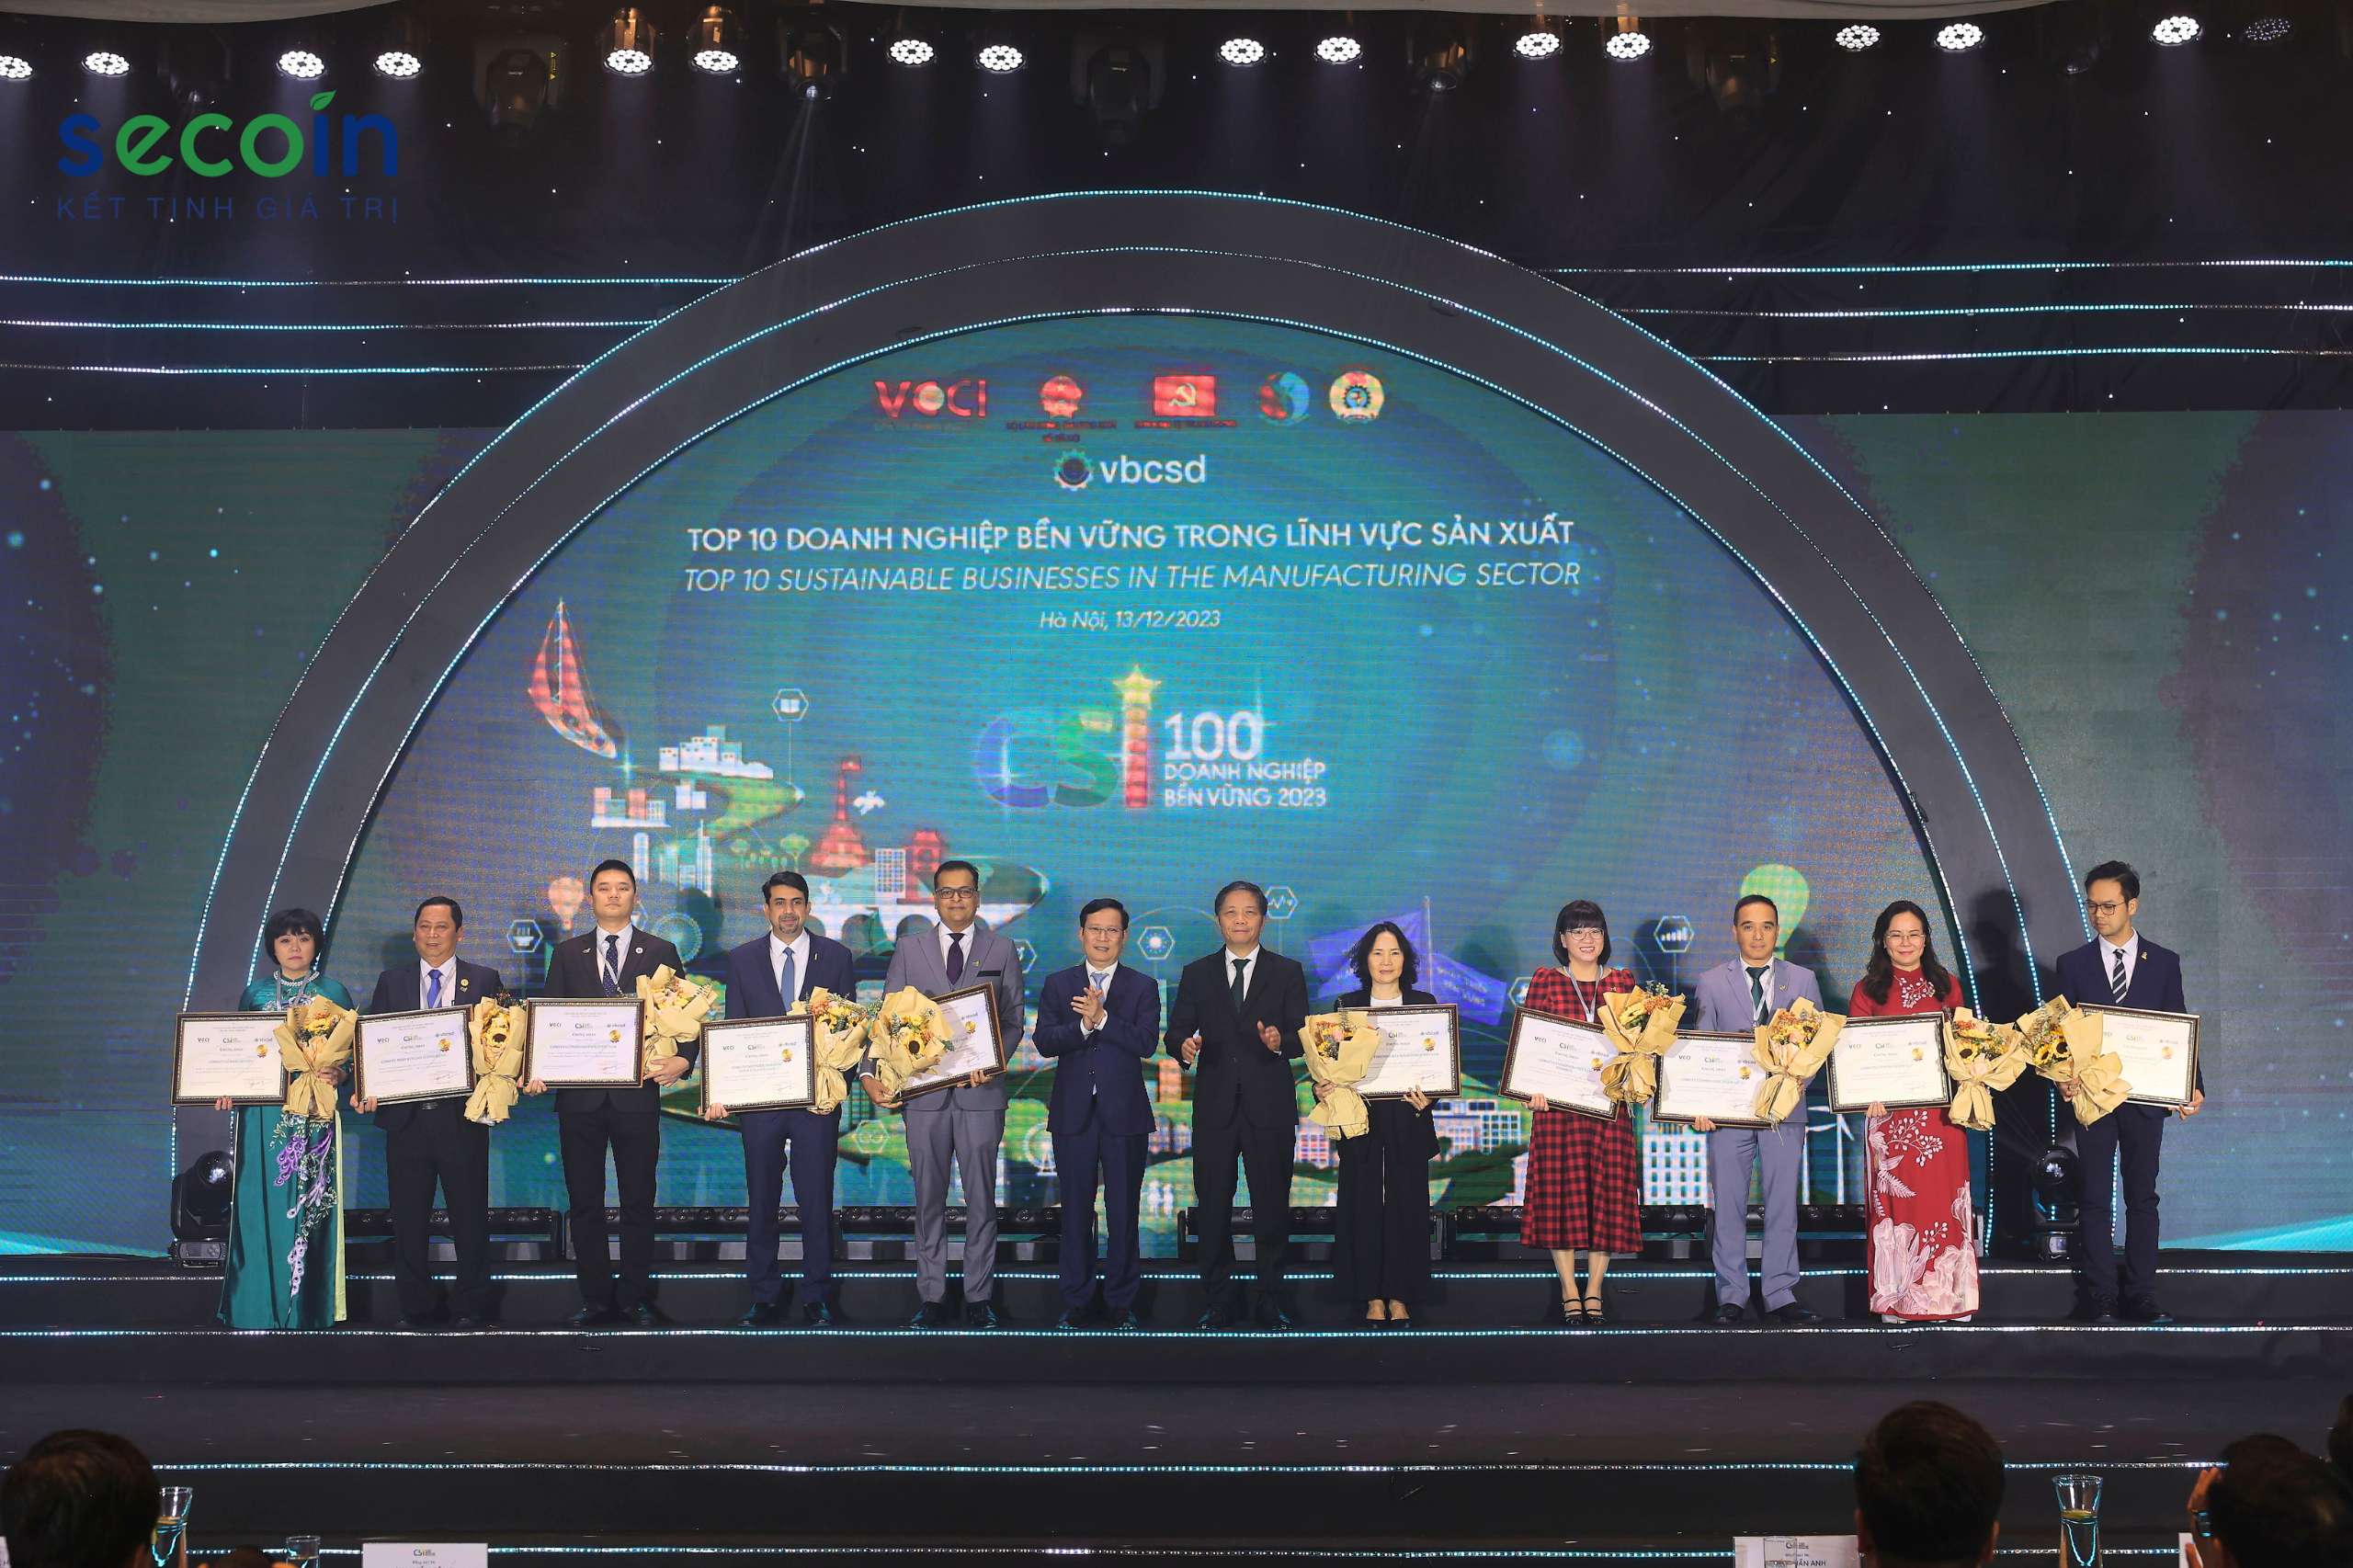 Secoin vinh dự được công nhận Top 10 Doanh nghiệp bền vững 2023 trong lĩnh vực sản xuất